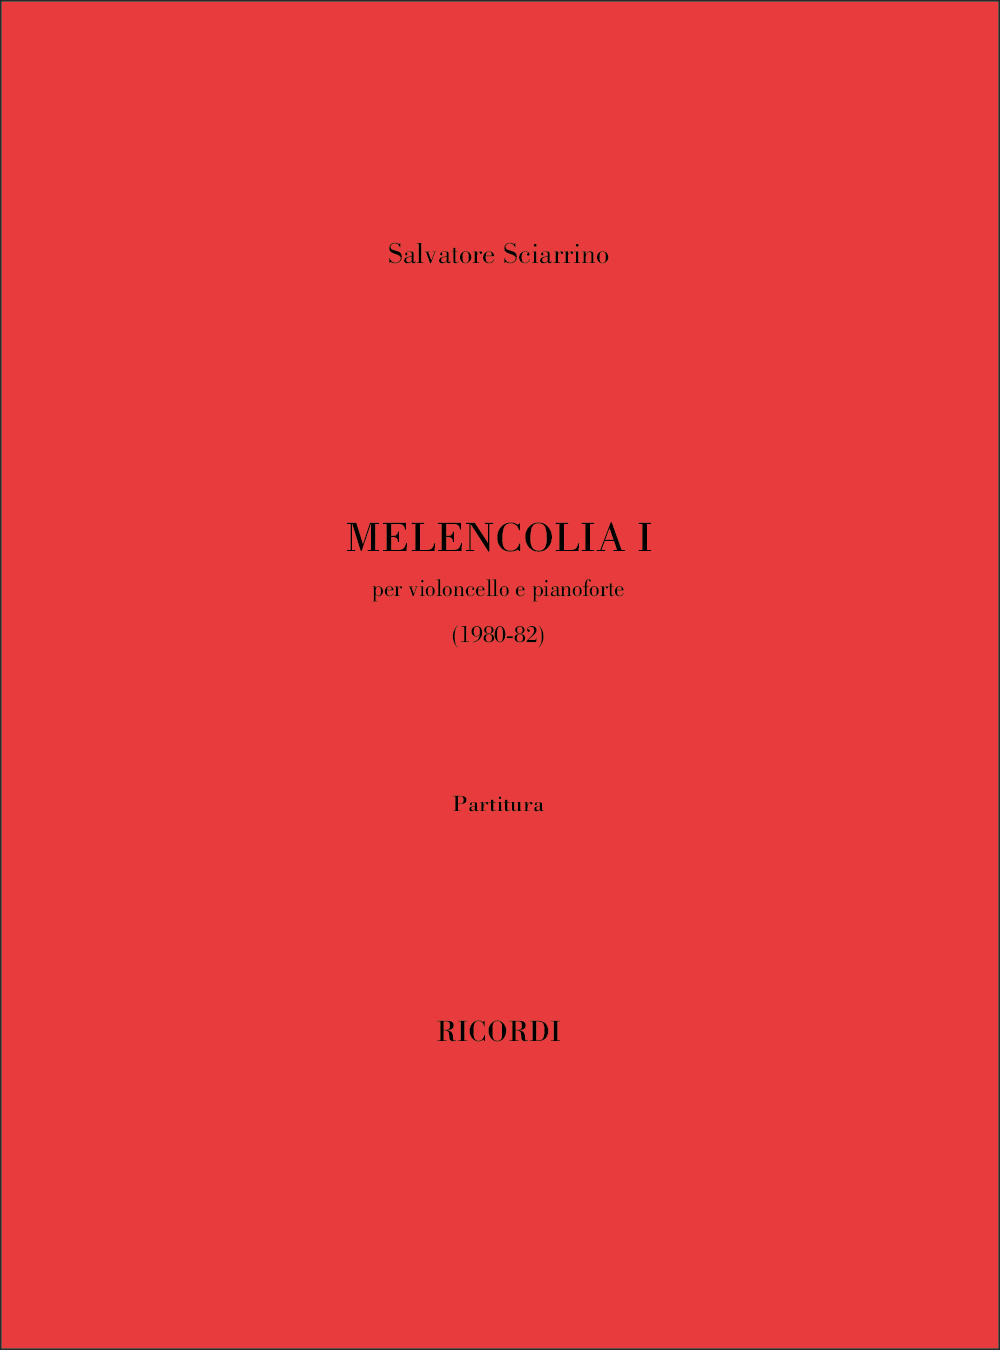 Salvatore Sciarrino: Melencolia I: Cello